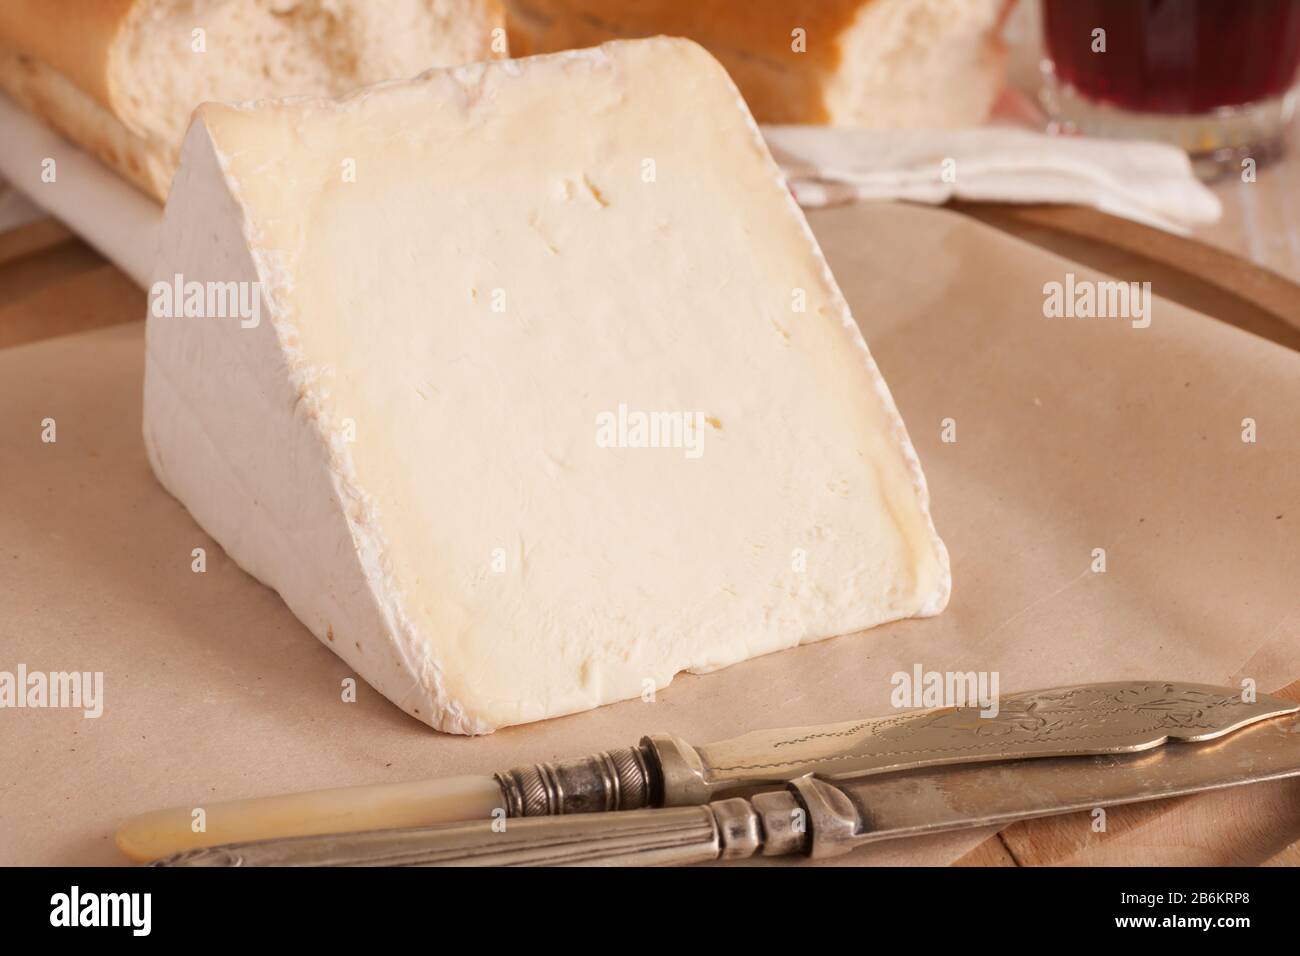 Vignotte un formaggio francese cremoso pieno di grassi prodotto nella regione Champagne-Ardenne della Normandia Foto Stock